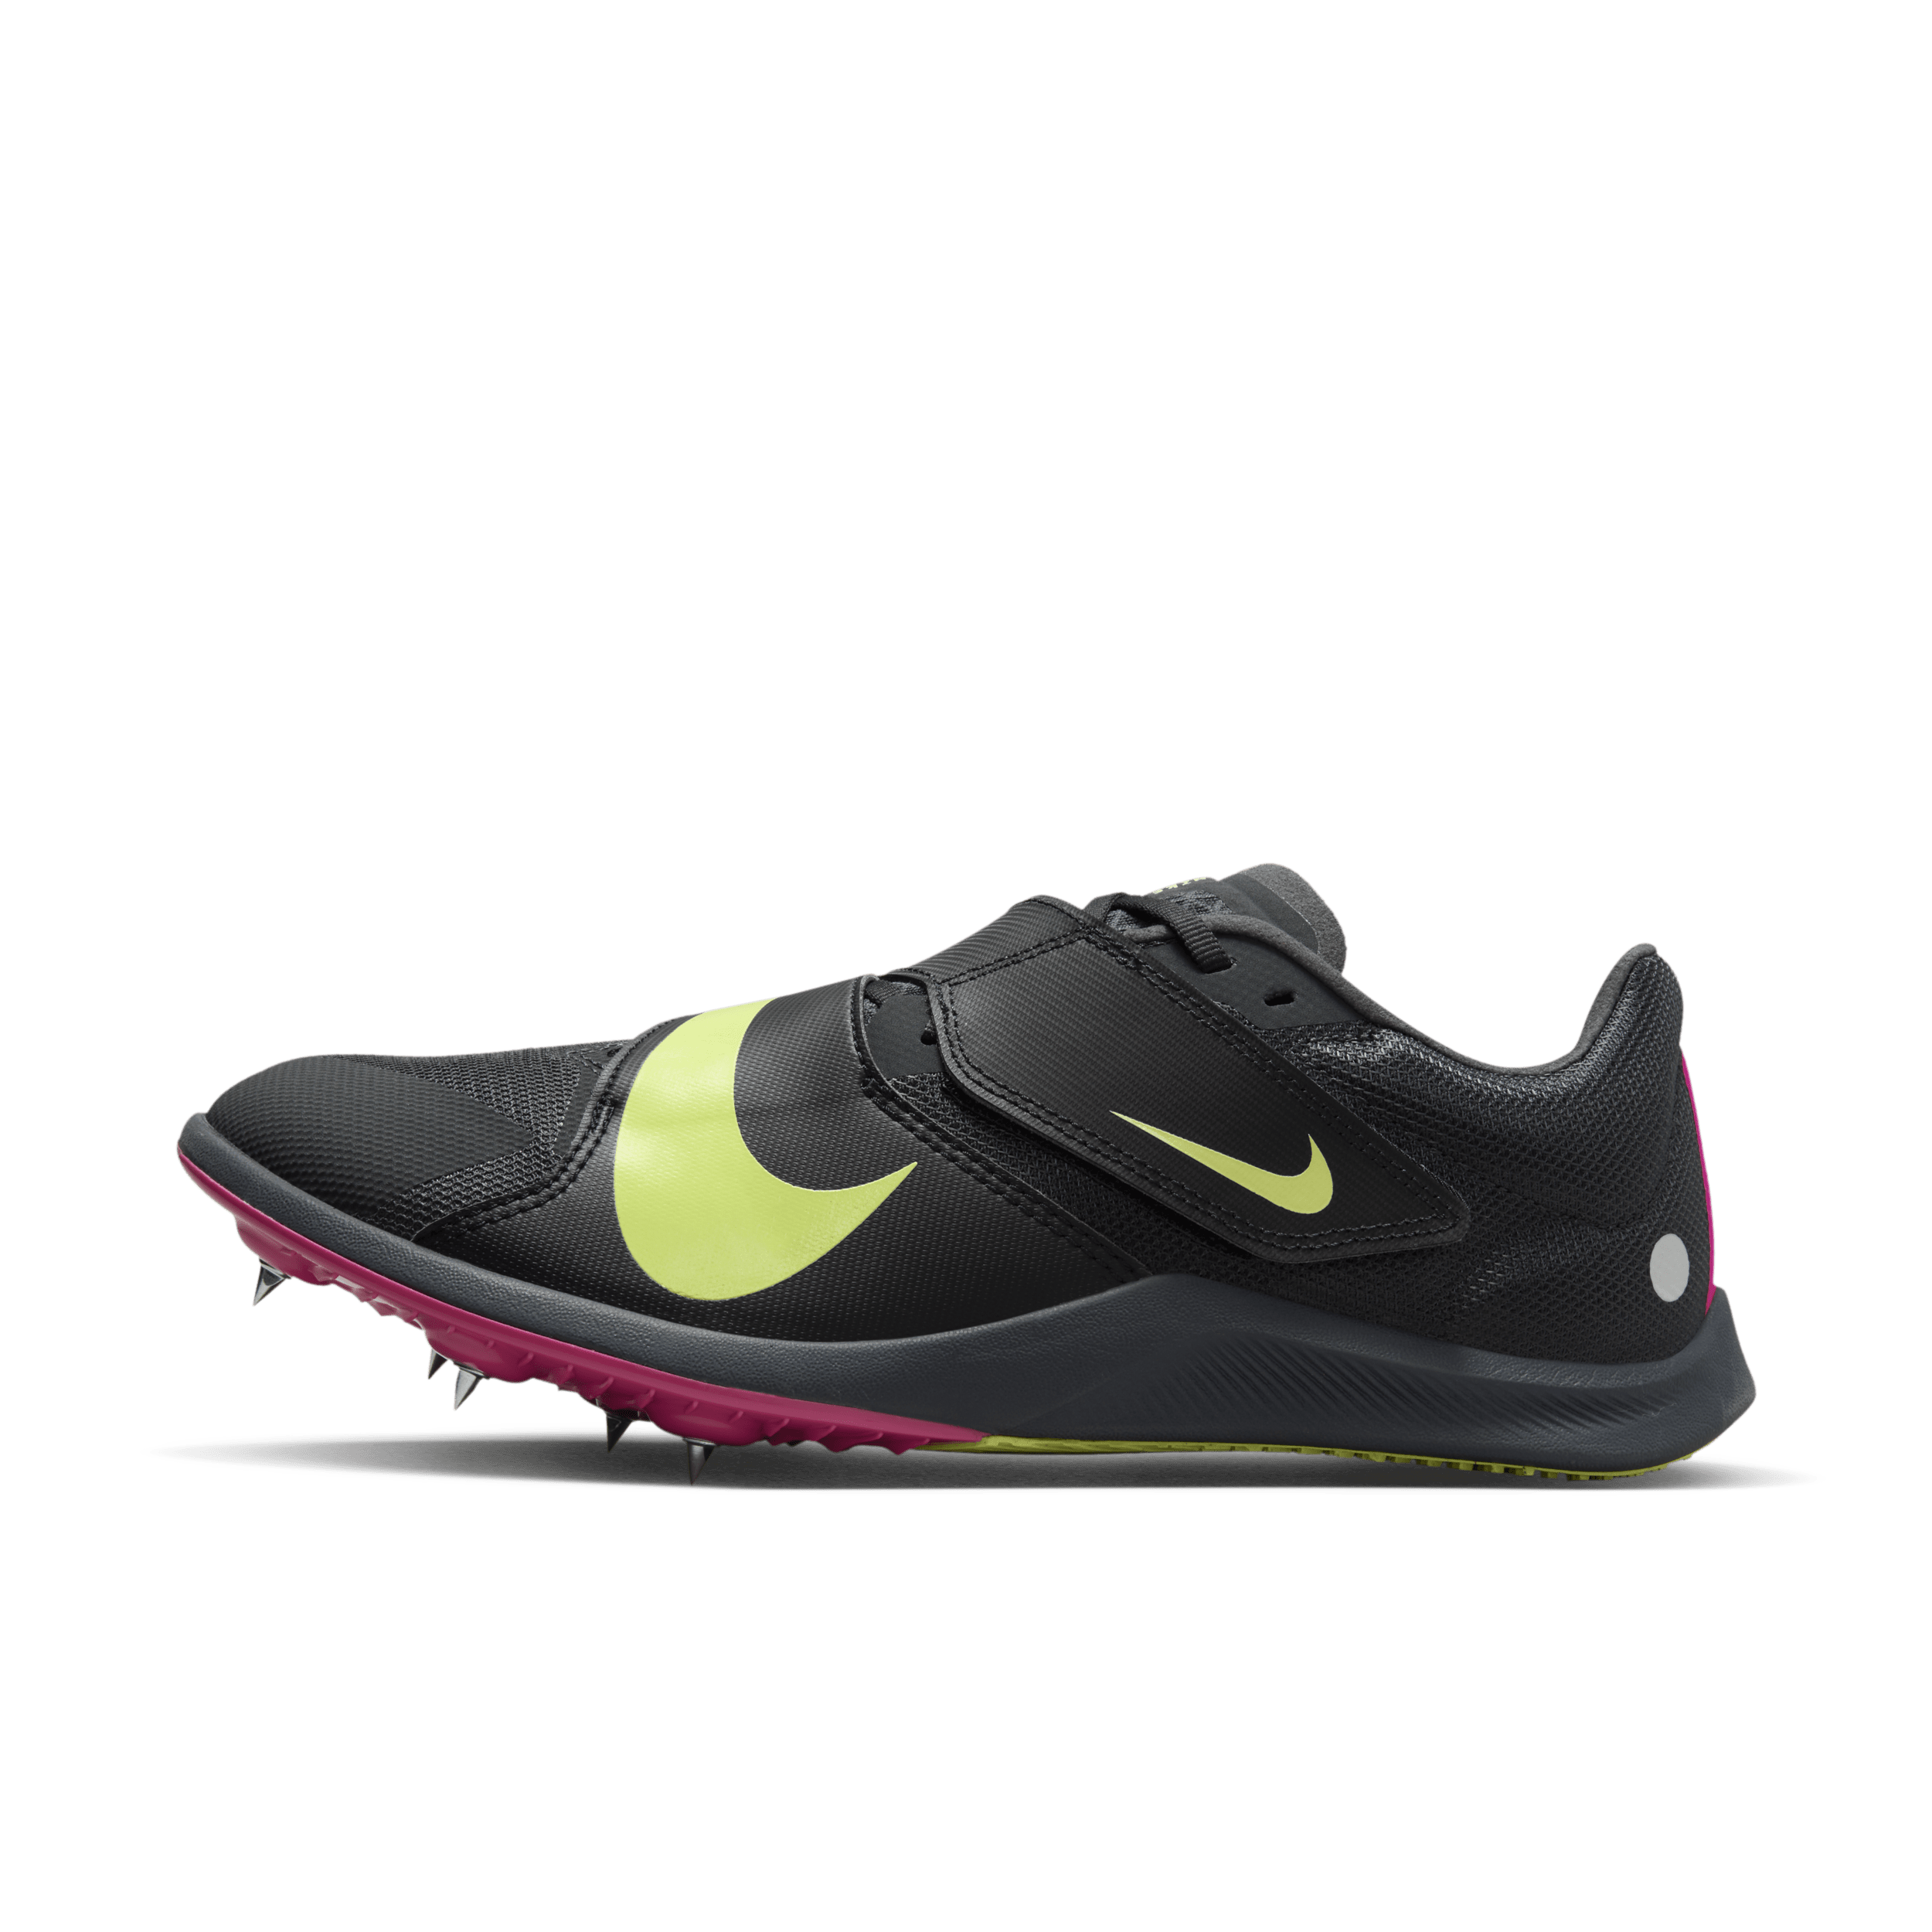 Scarpa chiodata per il salto Nike Rival Jump - Grigio